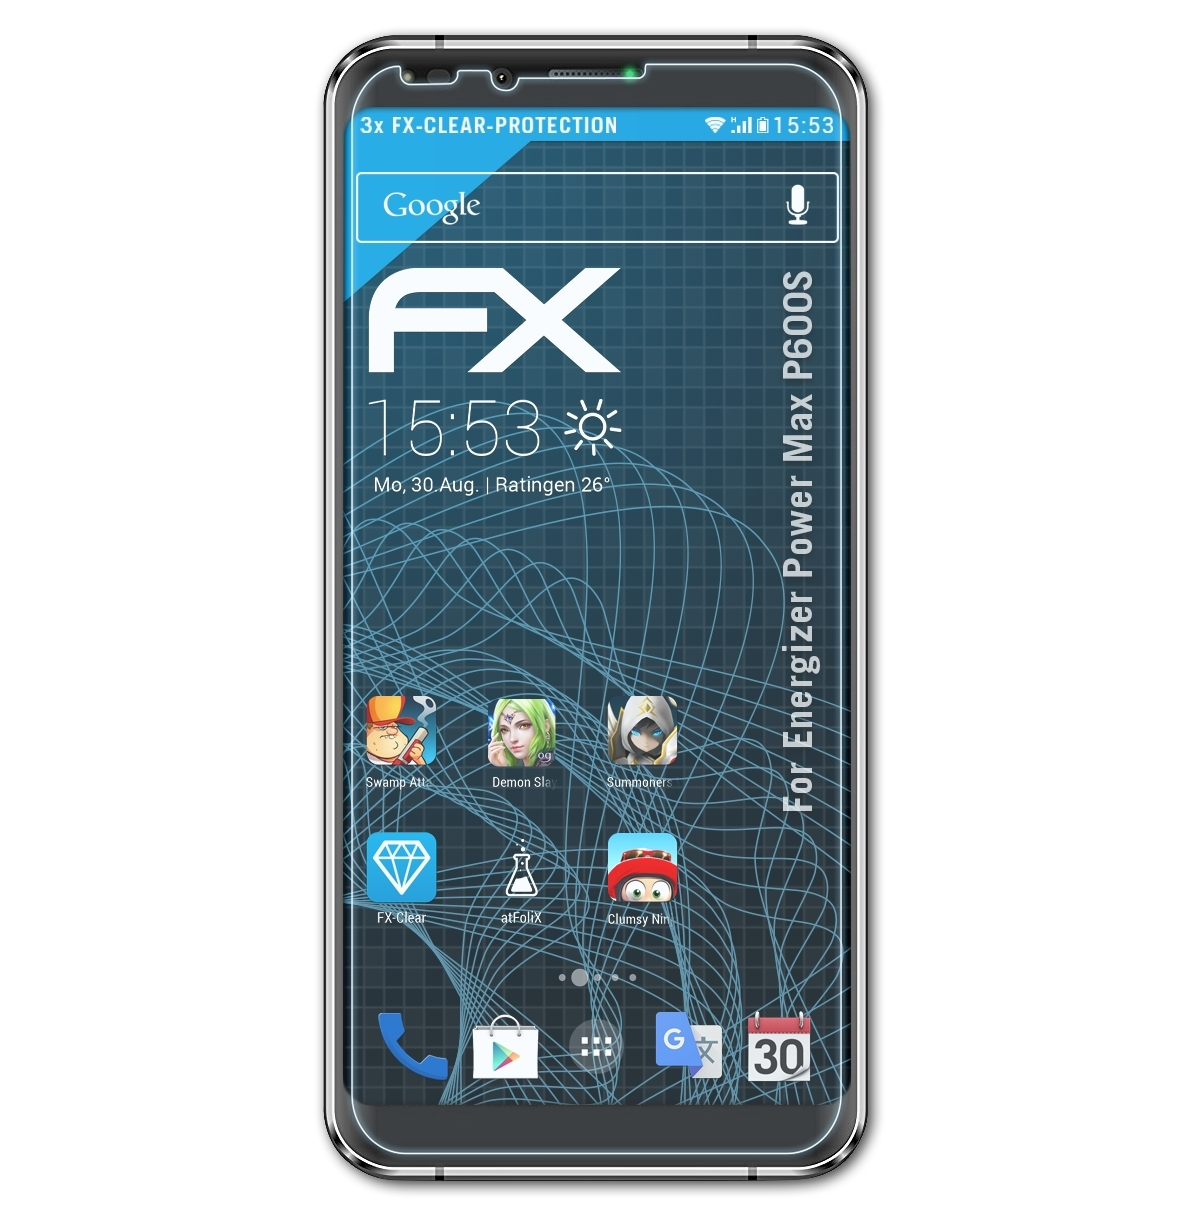 P600S) FX-Clear Power ATFOLIX Displayschutz(für Max Energizer 3x